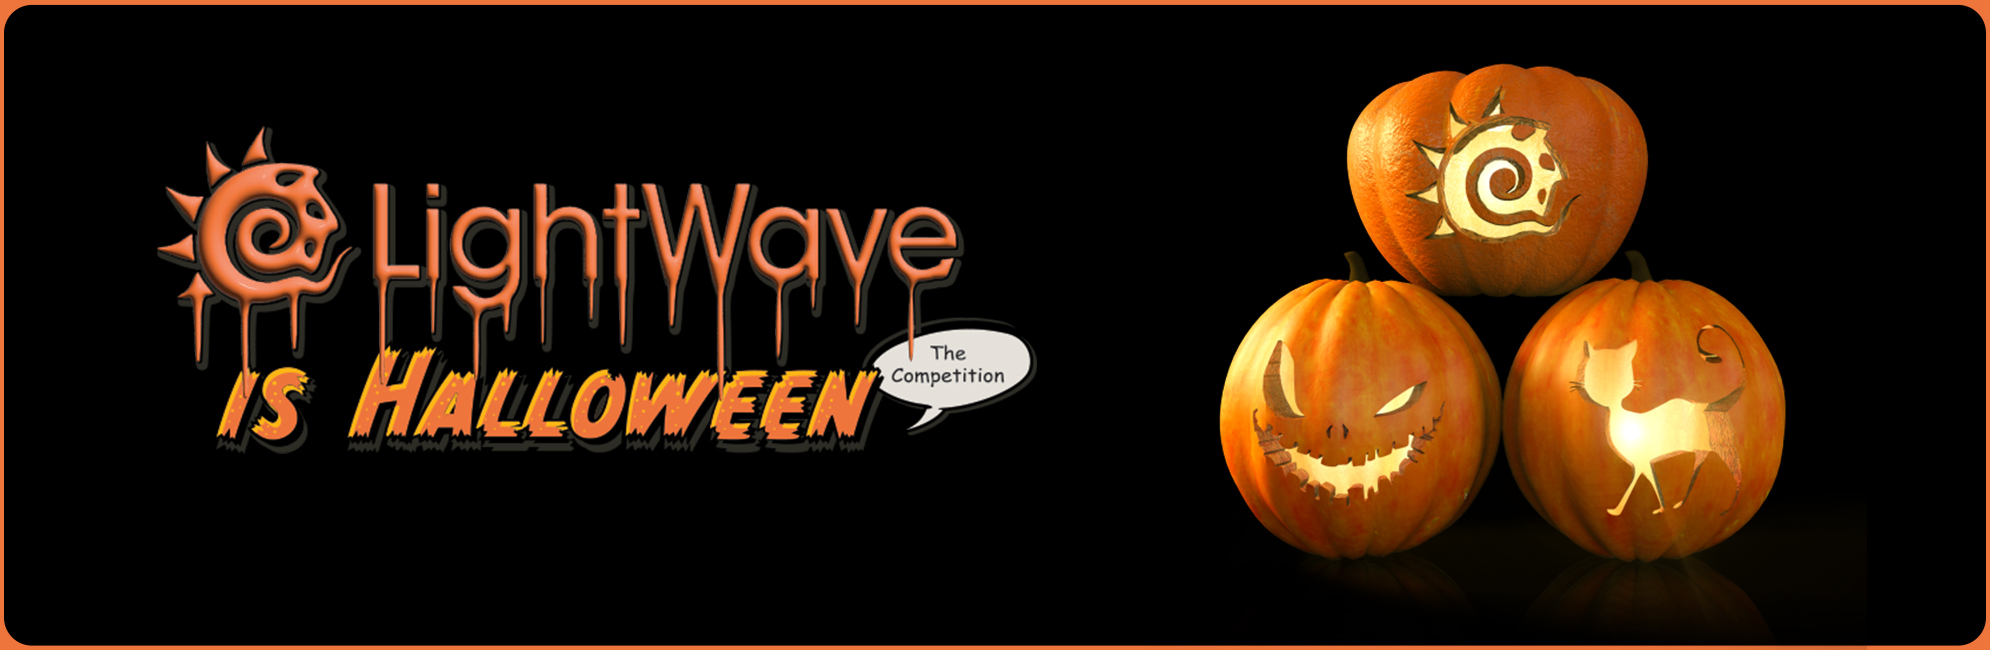 Nome: LightWave is Halloween  LightWave 3D Promo 20320918.jpg
Visite: 61
Dimensione: 387.4 KB